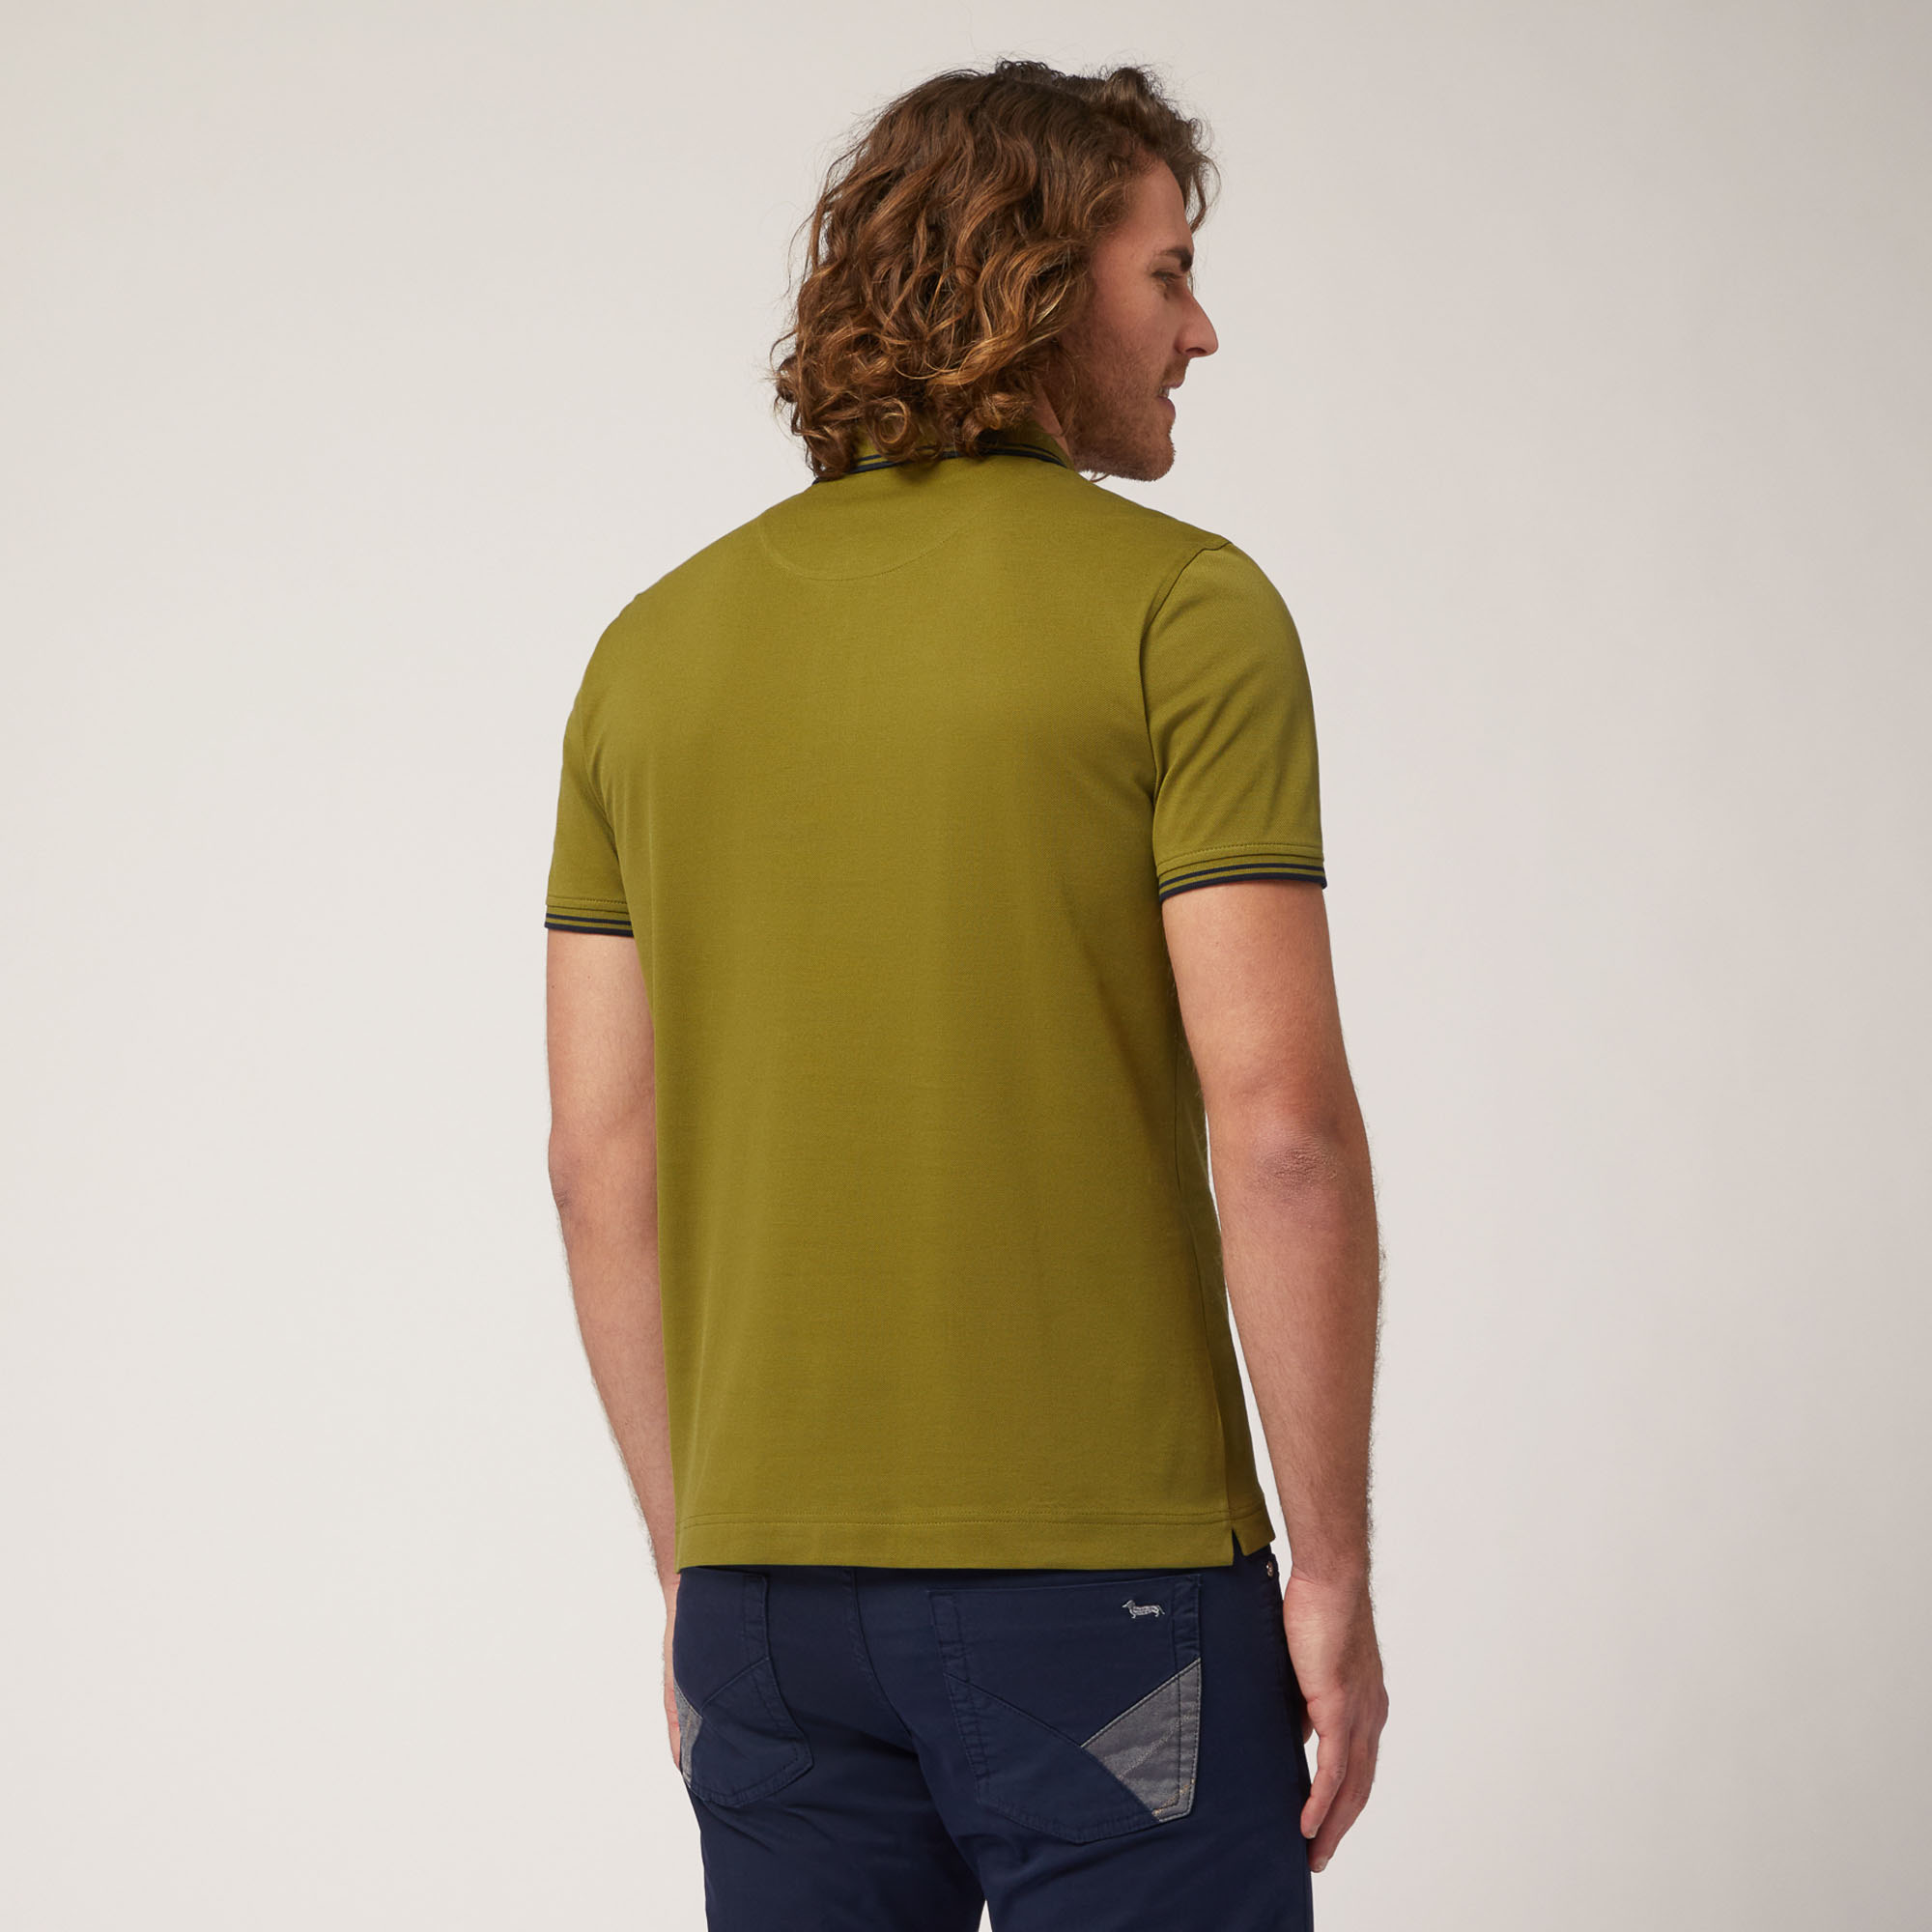 Poloshirt mit Kontrastfarben, Grün, large image number 1